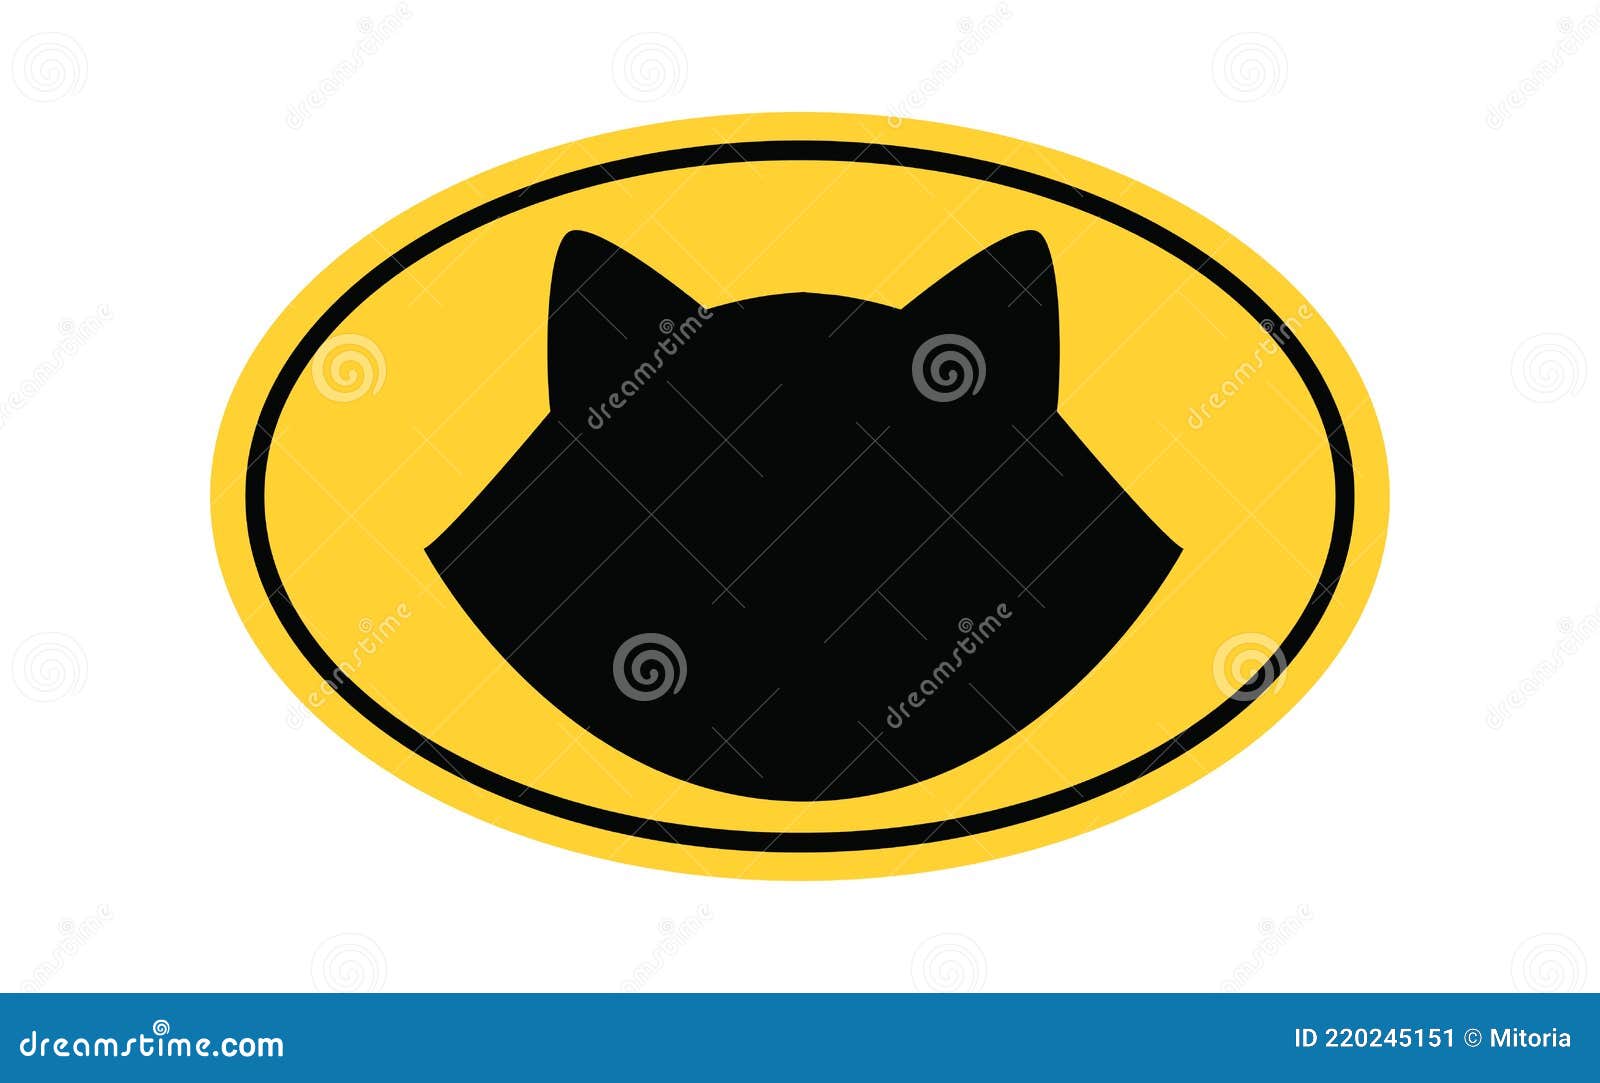 Batman Cat Stock Illustrations – 62 Batman Cat Stock Illustrations, Vectors  & Clipart - Dreamstime